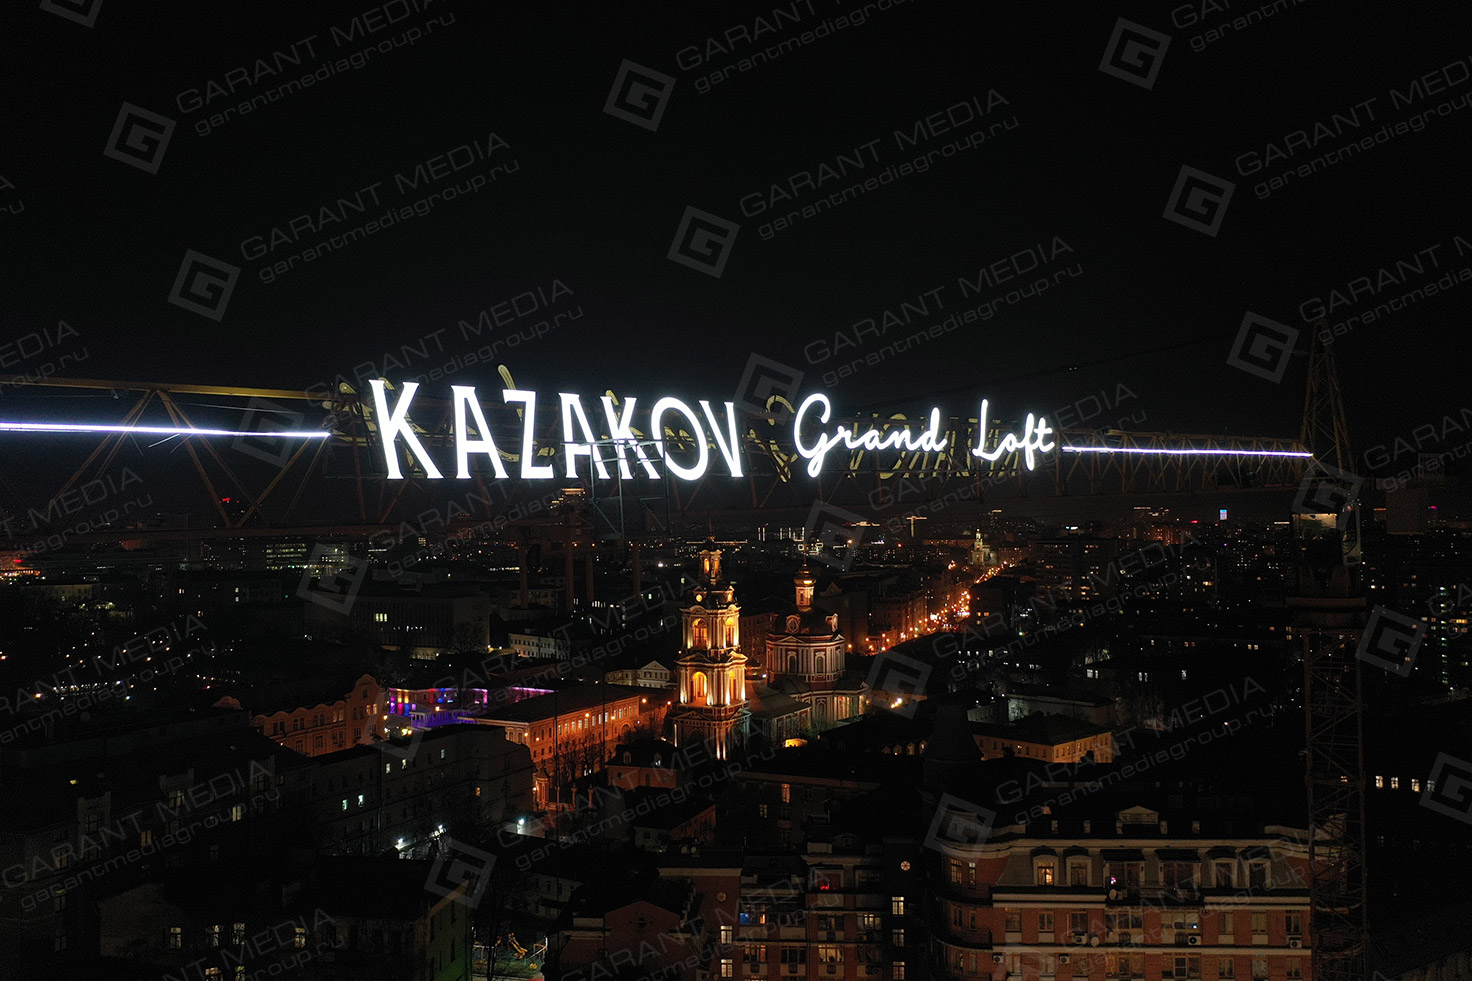 Брендирование башенного крана вывеской Kazakov Grand Loft